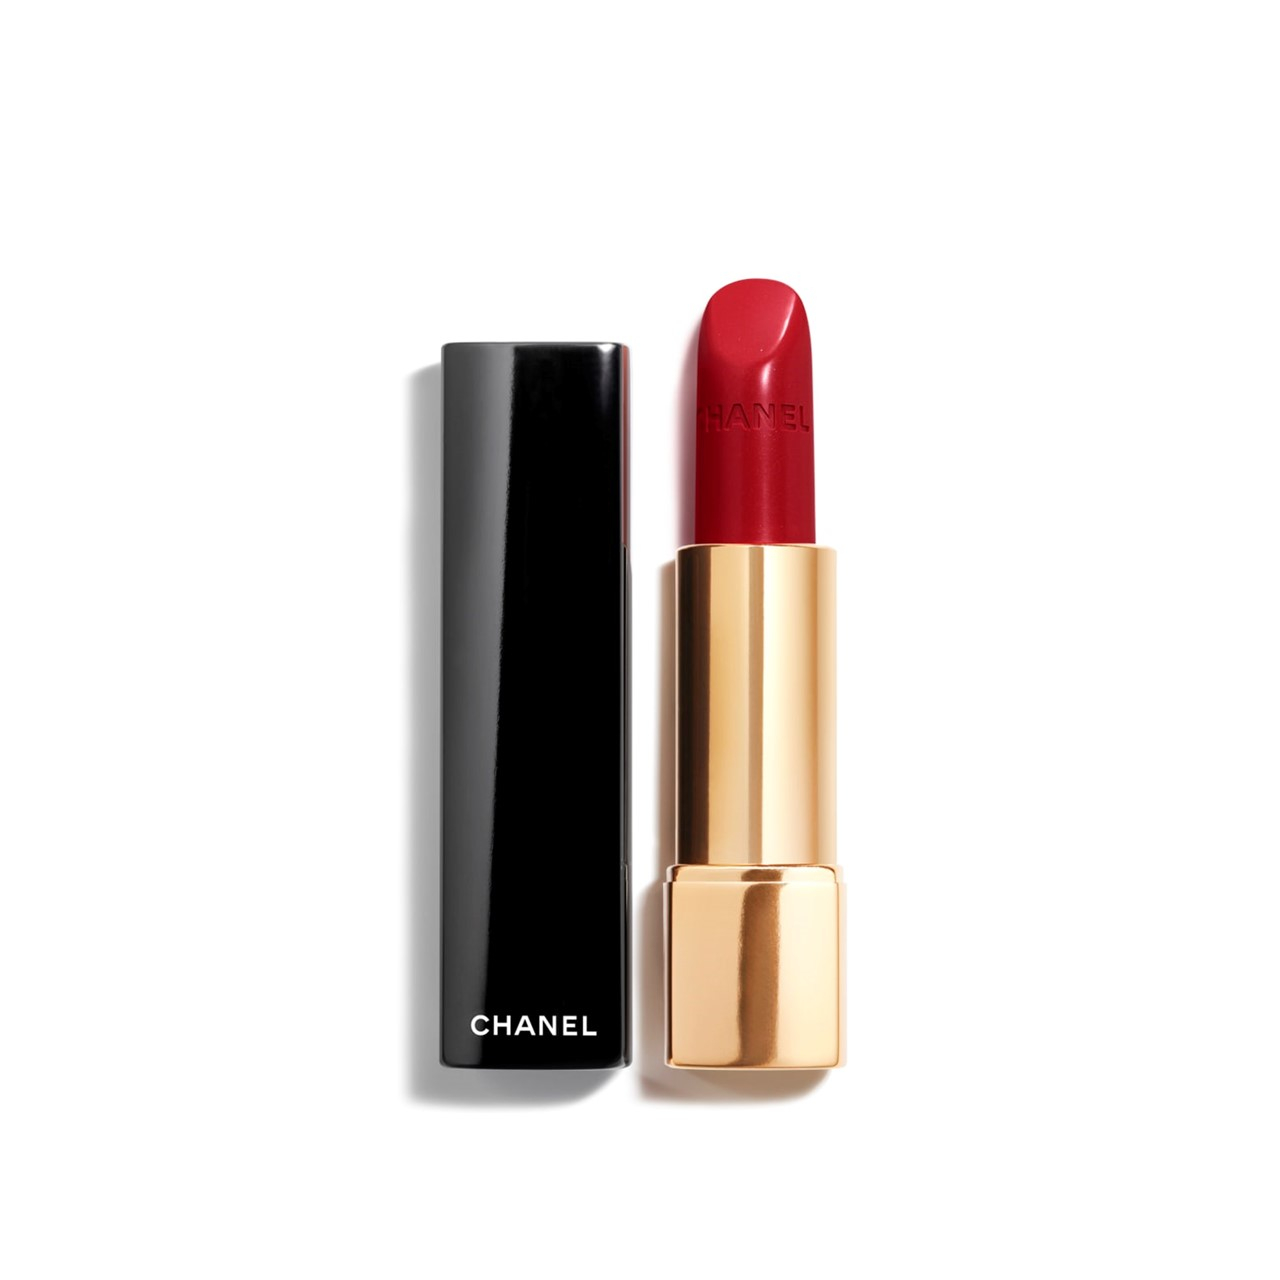 Ещё один мой красный: Chanel Rouge Allure Luminous Intense Lip Colour #99  Pirate, Отзывы покупателей